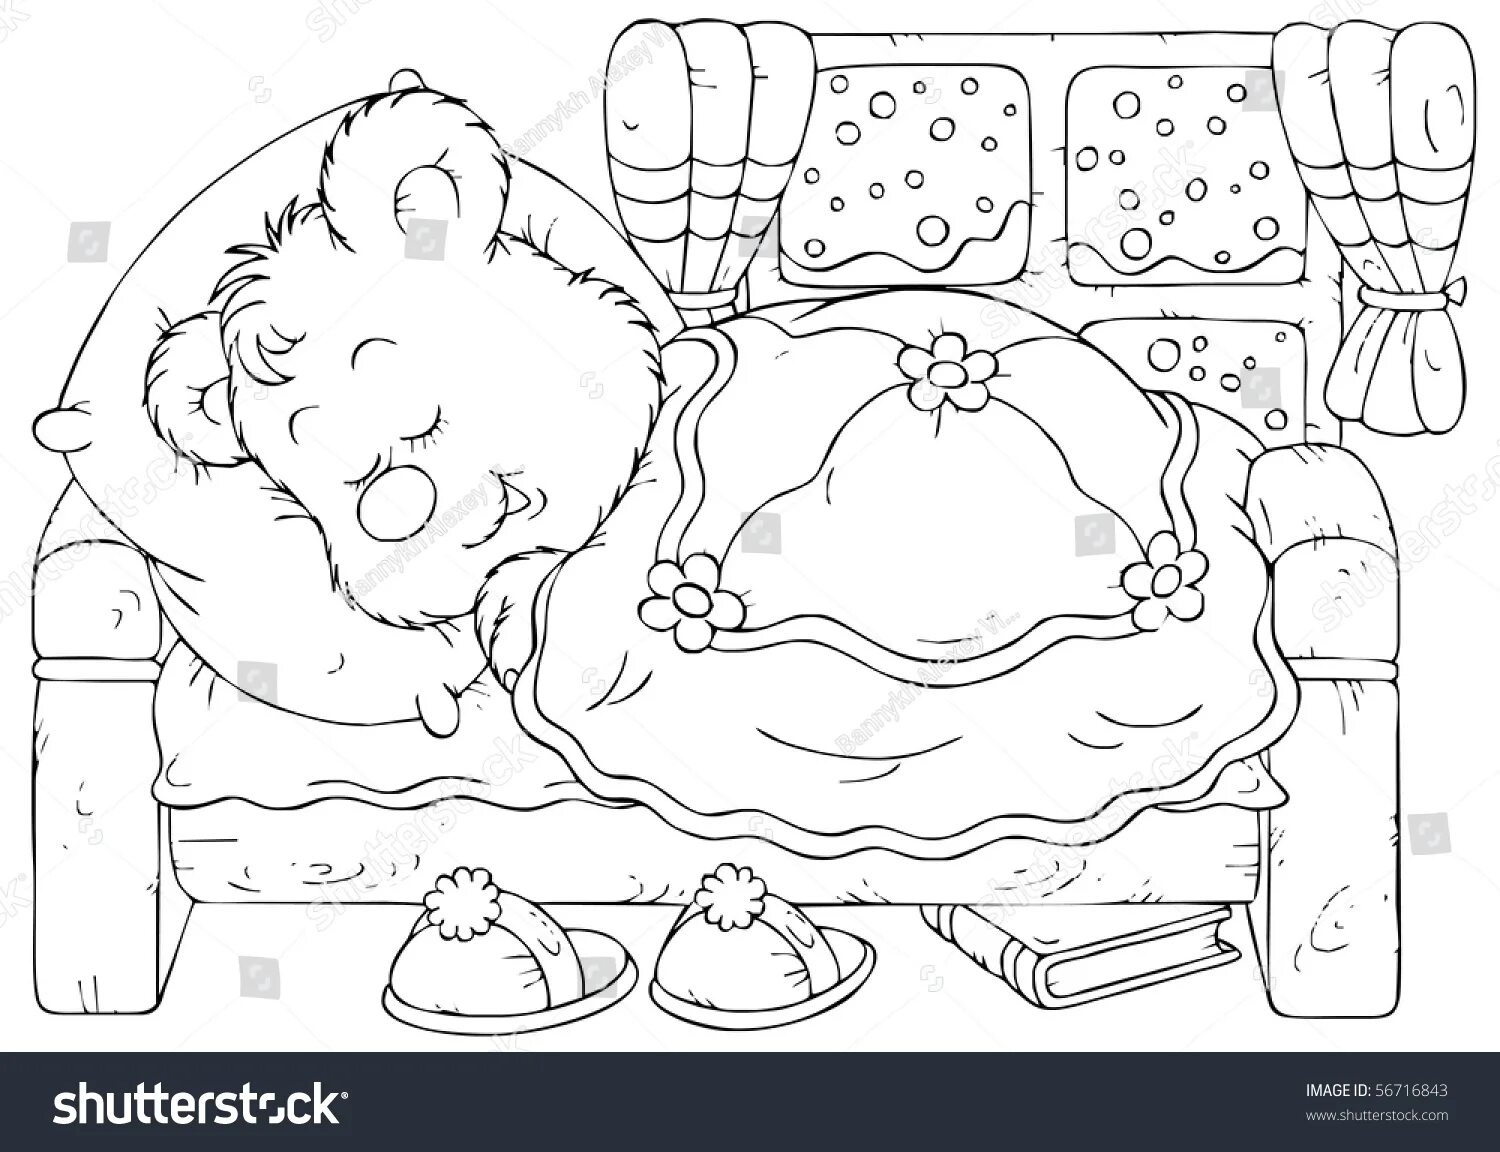 Медведь спит в берлоге для детей #1